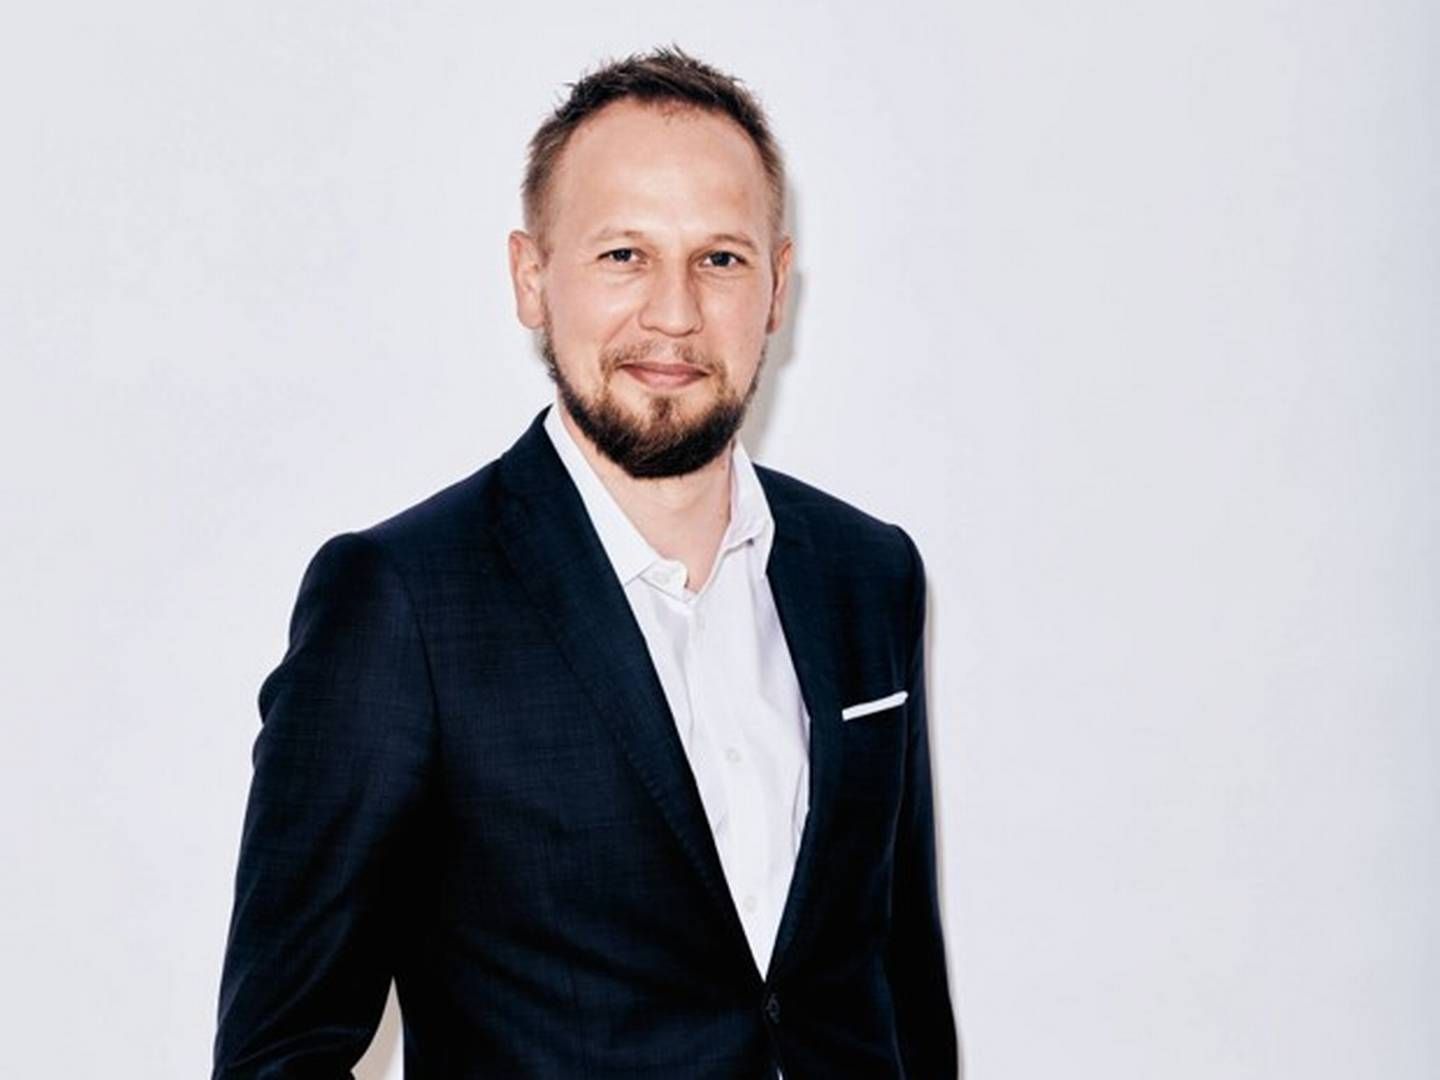 Adm. direktør i Geelmuyden Kiese Danmark, Mikkel Bendtsen, ser store muligheder for vækst fremover. | Foto: PR